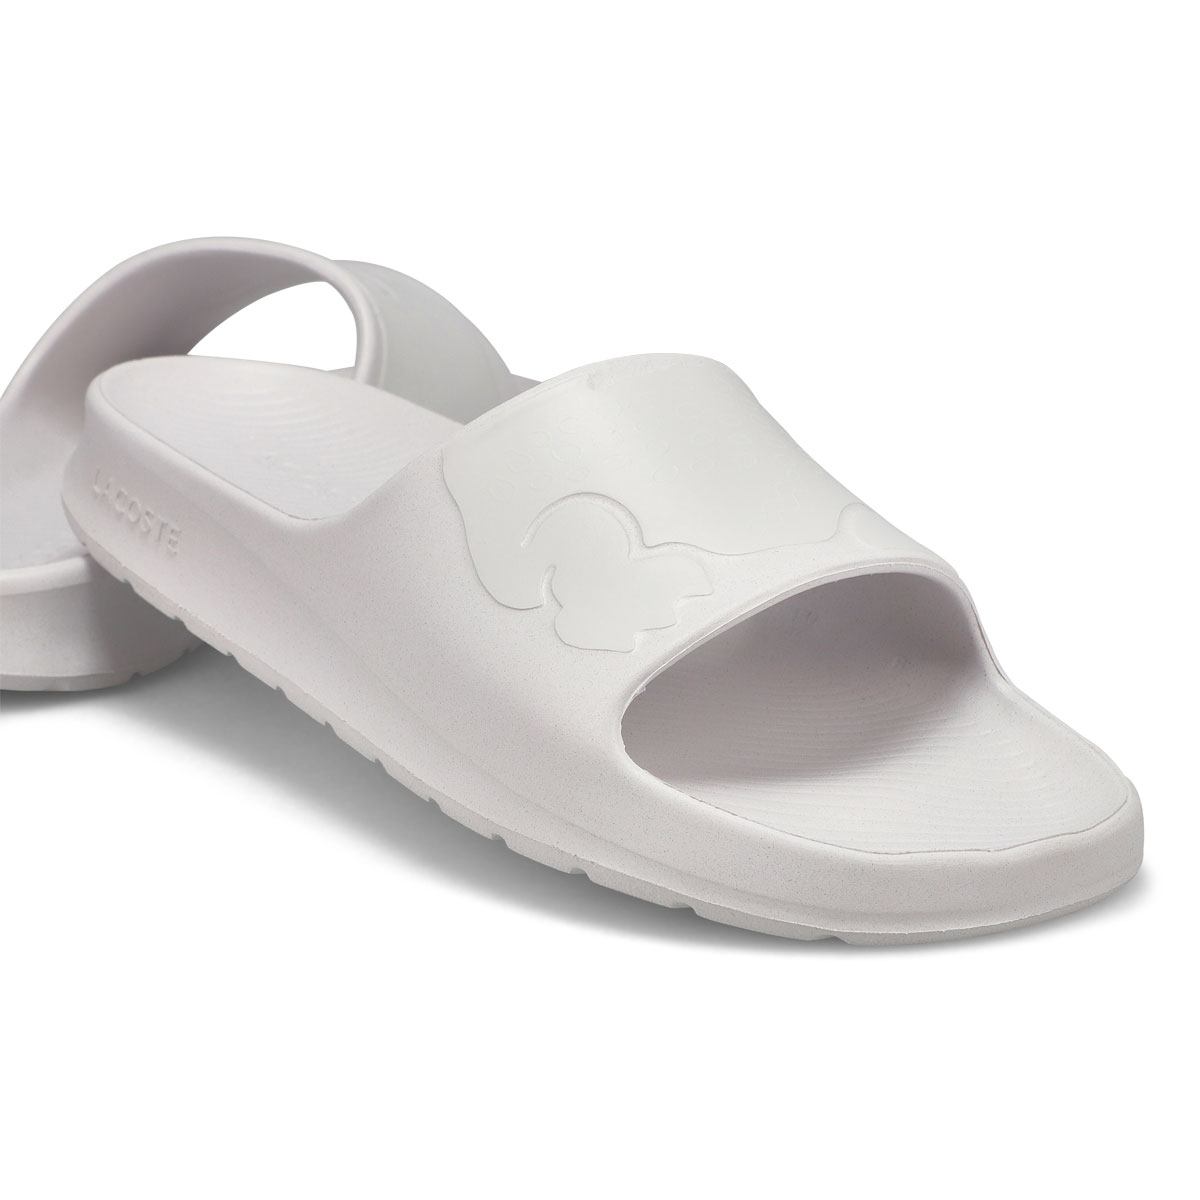 Men's Croco 2.0 Slide Sandal - White/ Off White